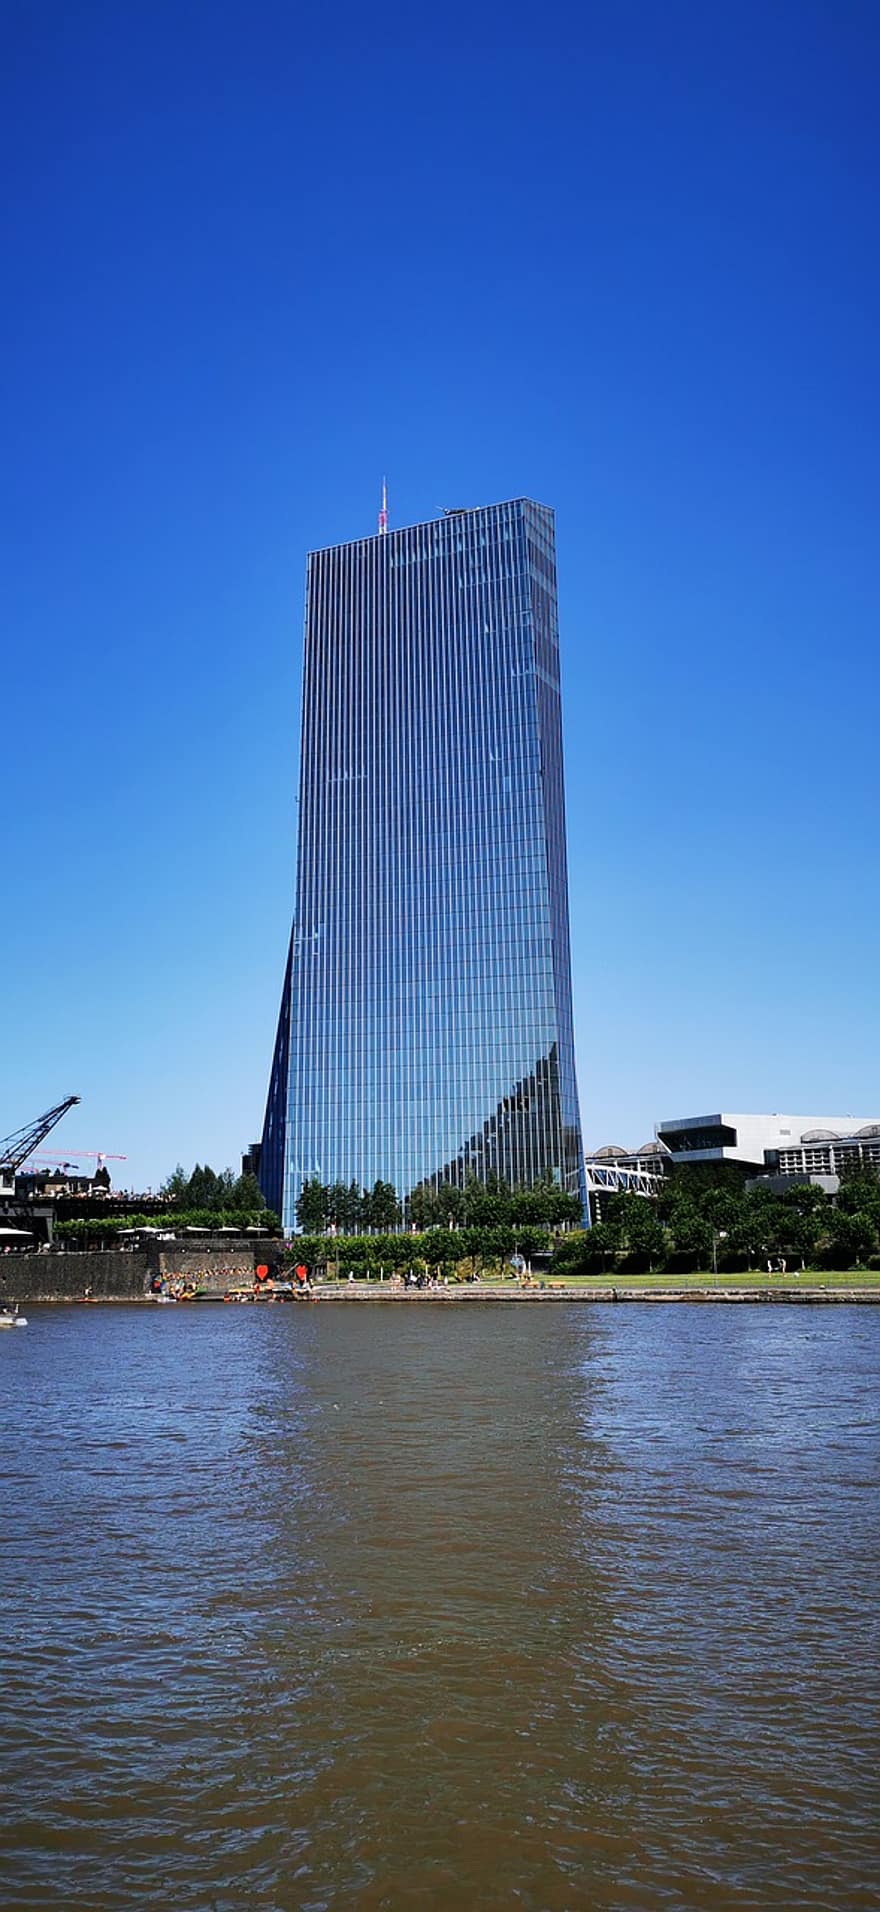 banca centrale europea, costruzione, fiume, francoforte, Germania, costruzione di vetro, grattacielo, architettura, città